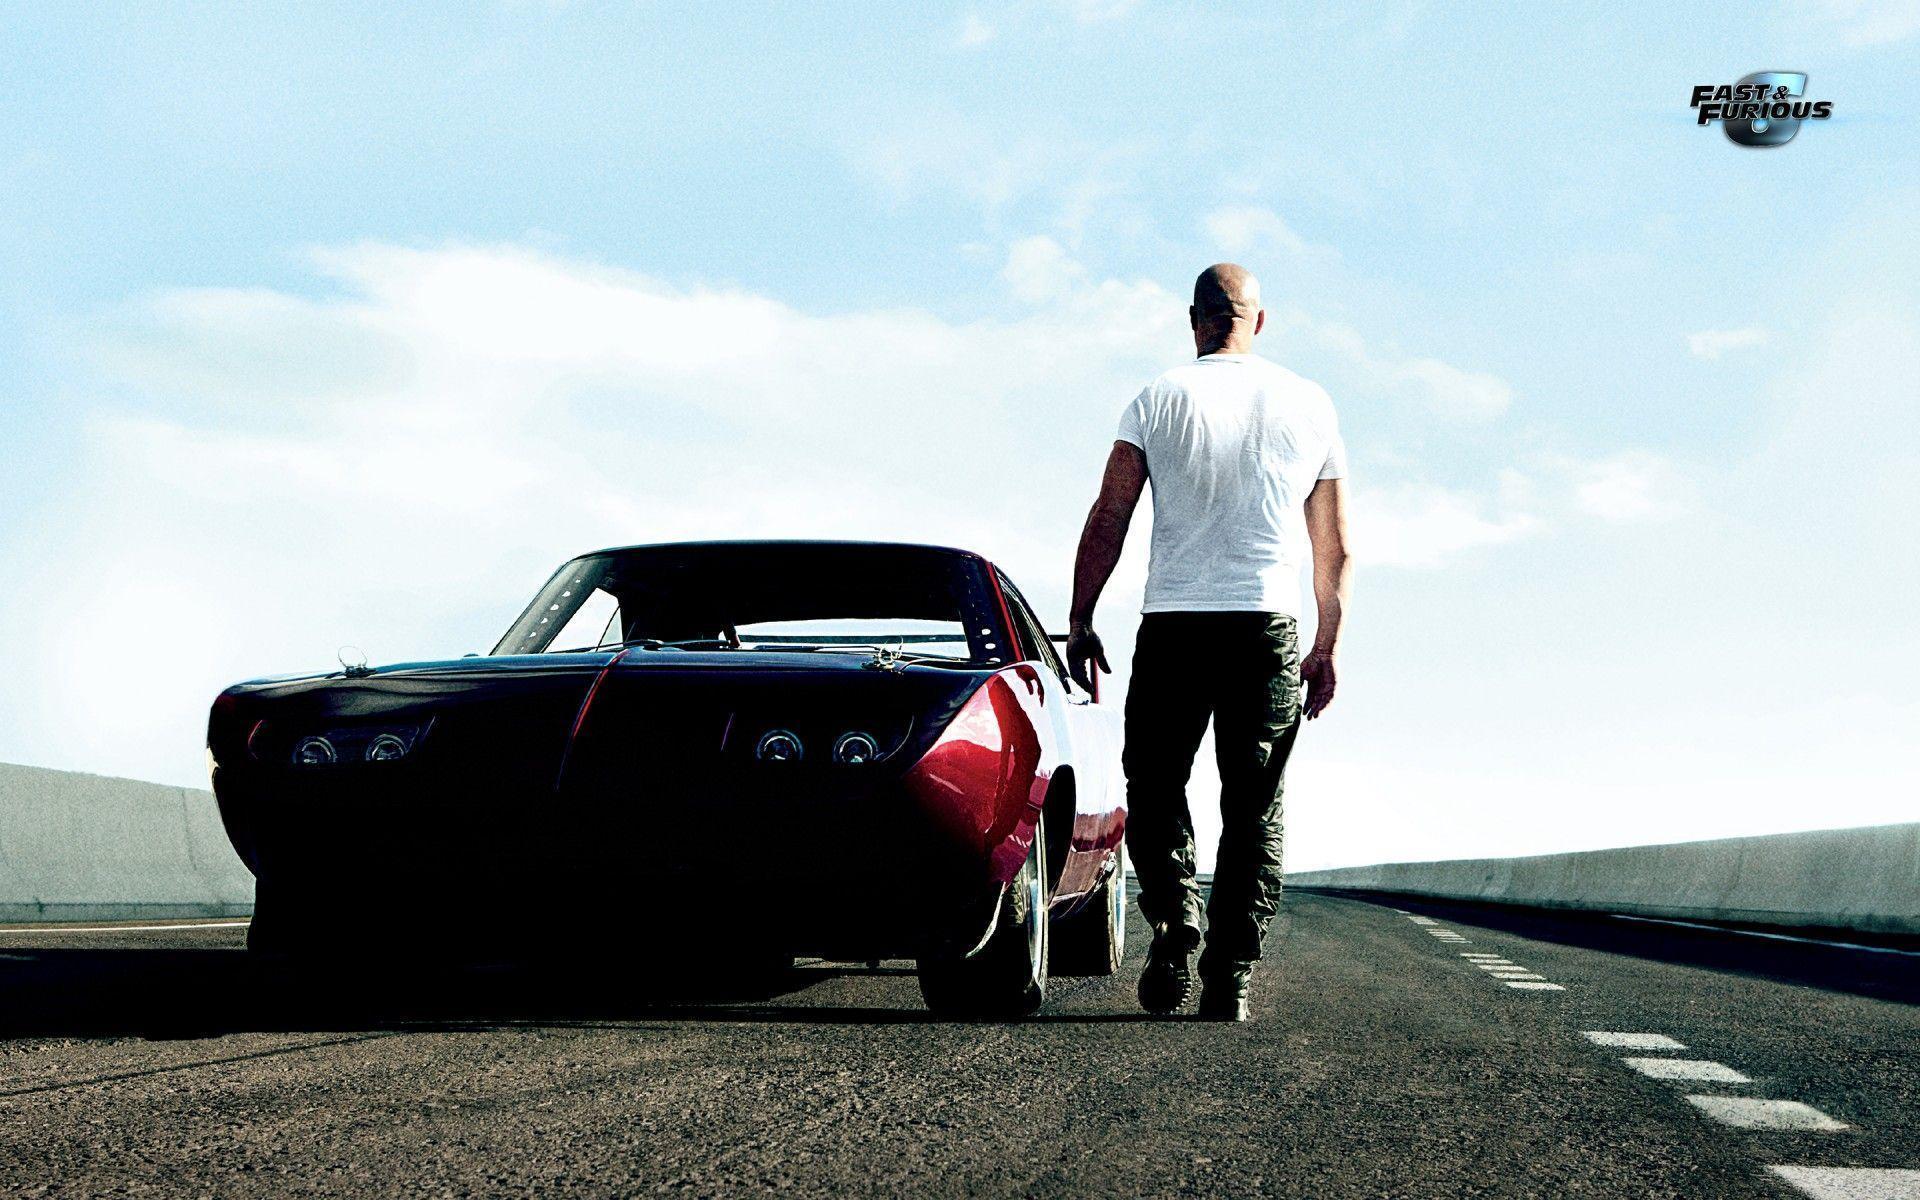 Vin Diesel in Fast & Furious 6 Wallpaper